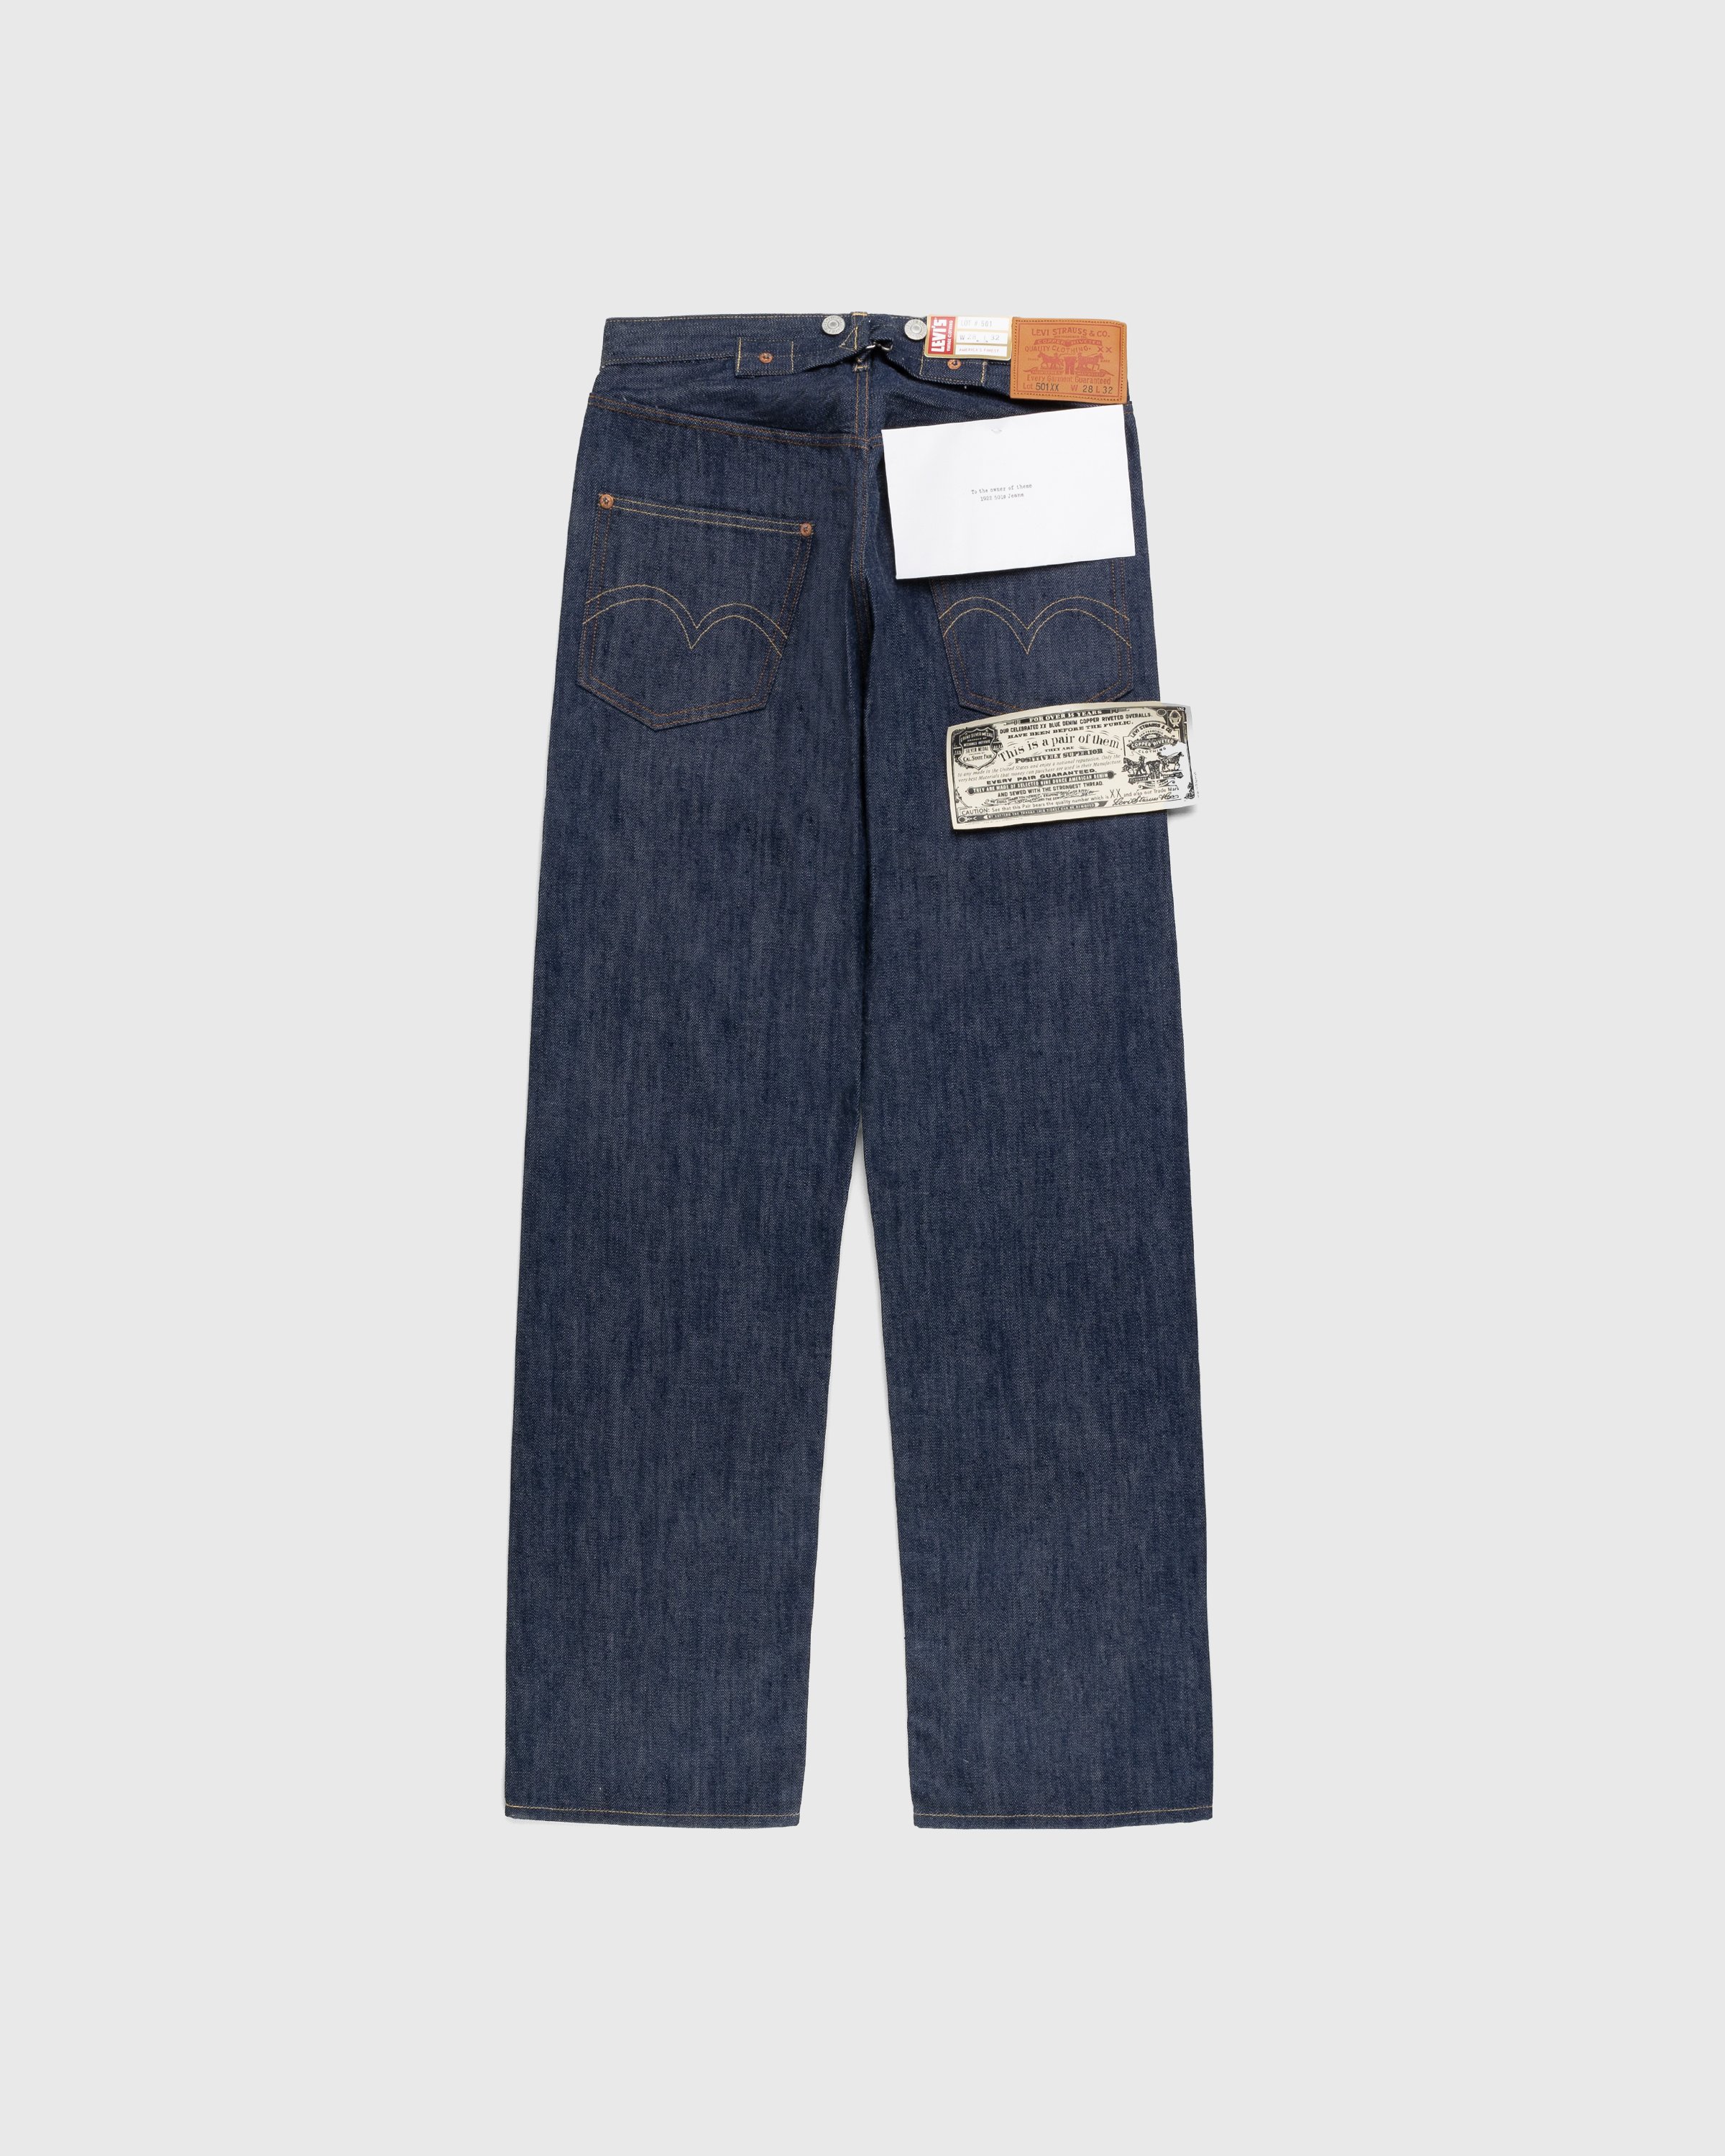 Levi's - 1922 501 Jeans Dark Indigo Flat Finish - Clothing - Blue - Image 2